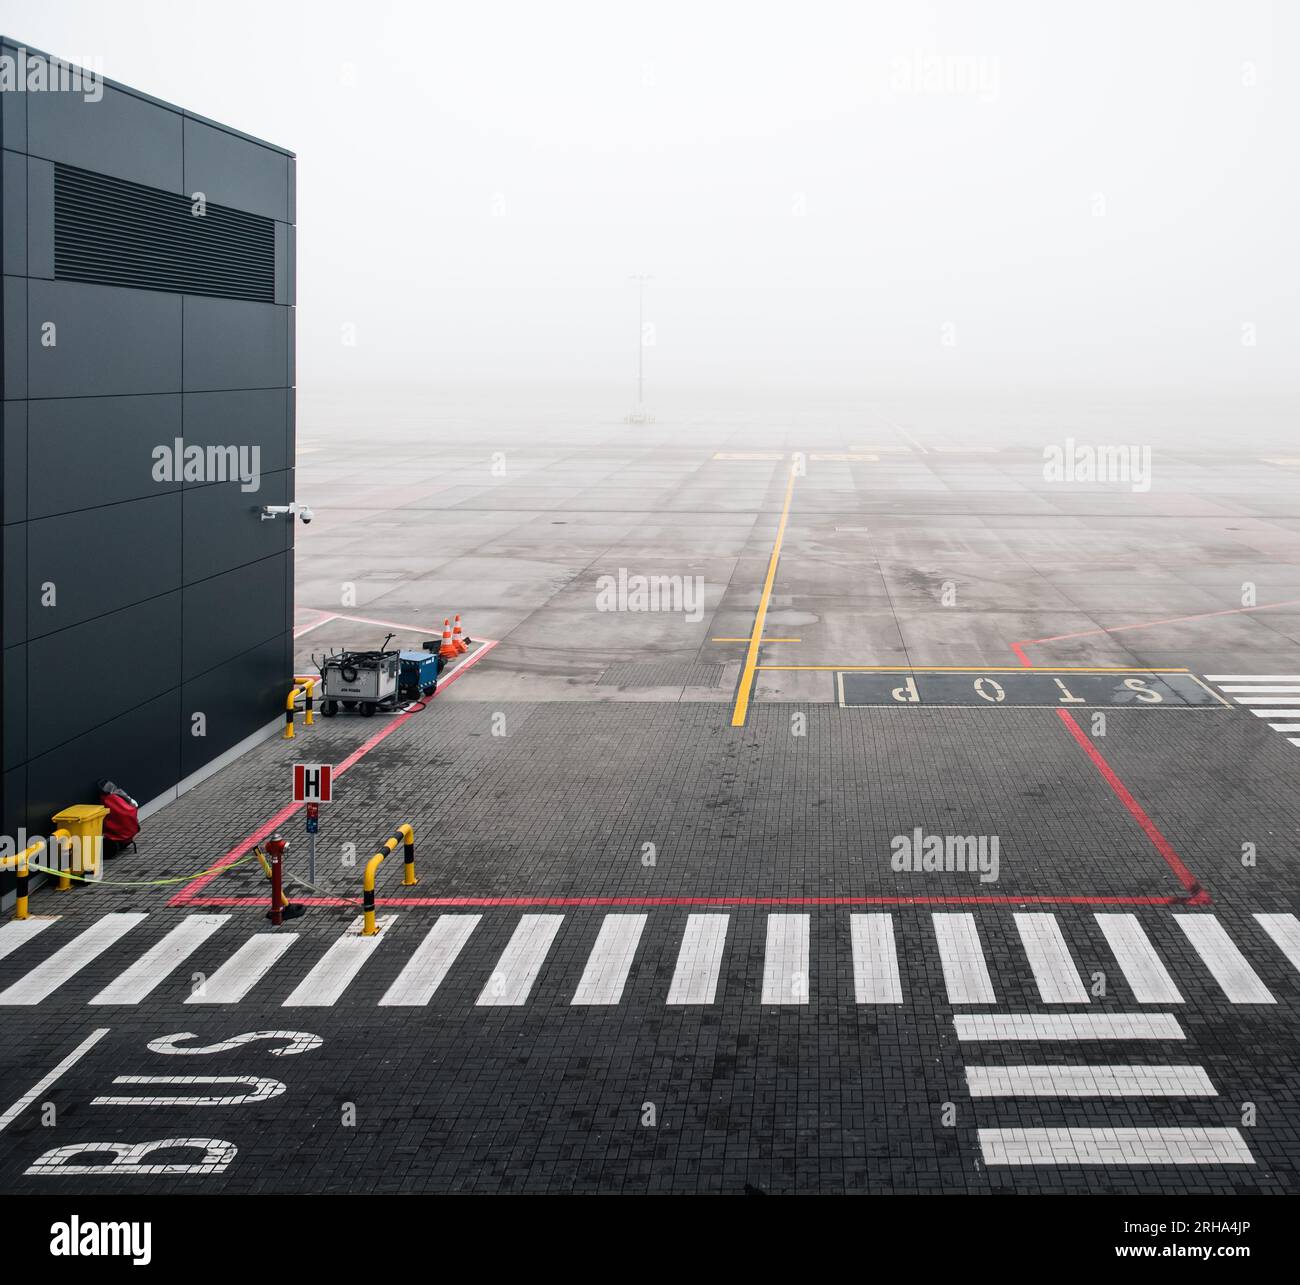 Aeroporto vuoto nella nebbia, era solo un cancello vuoto. Piazzale vuoto senza aerei vicino al terminal. Foto Stock